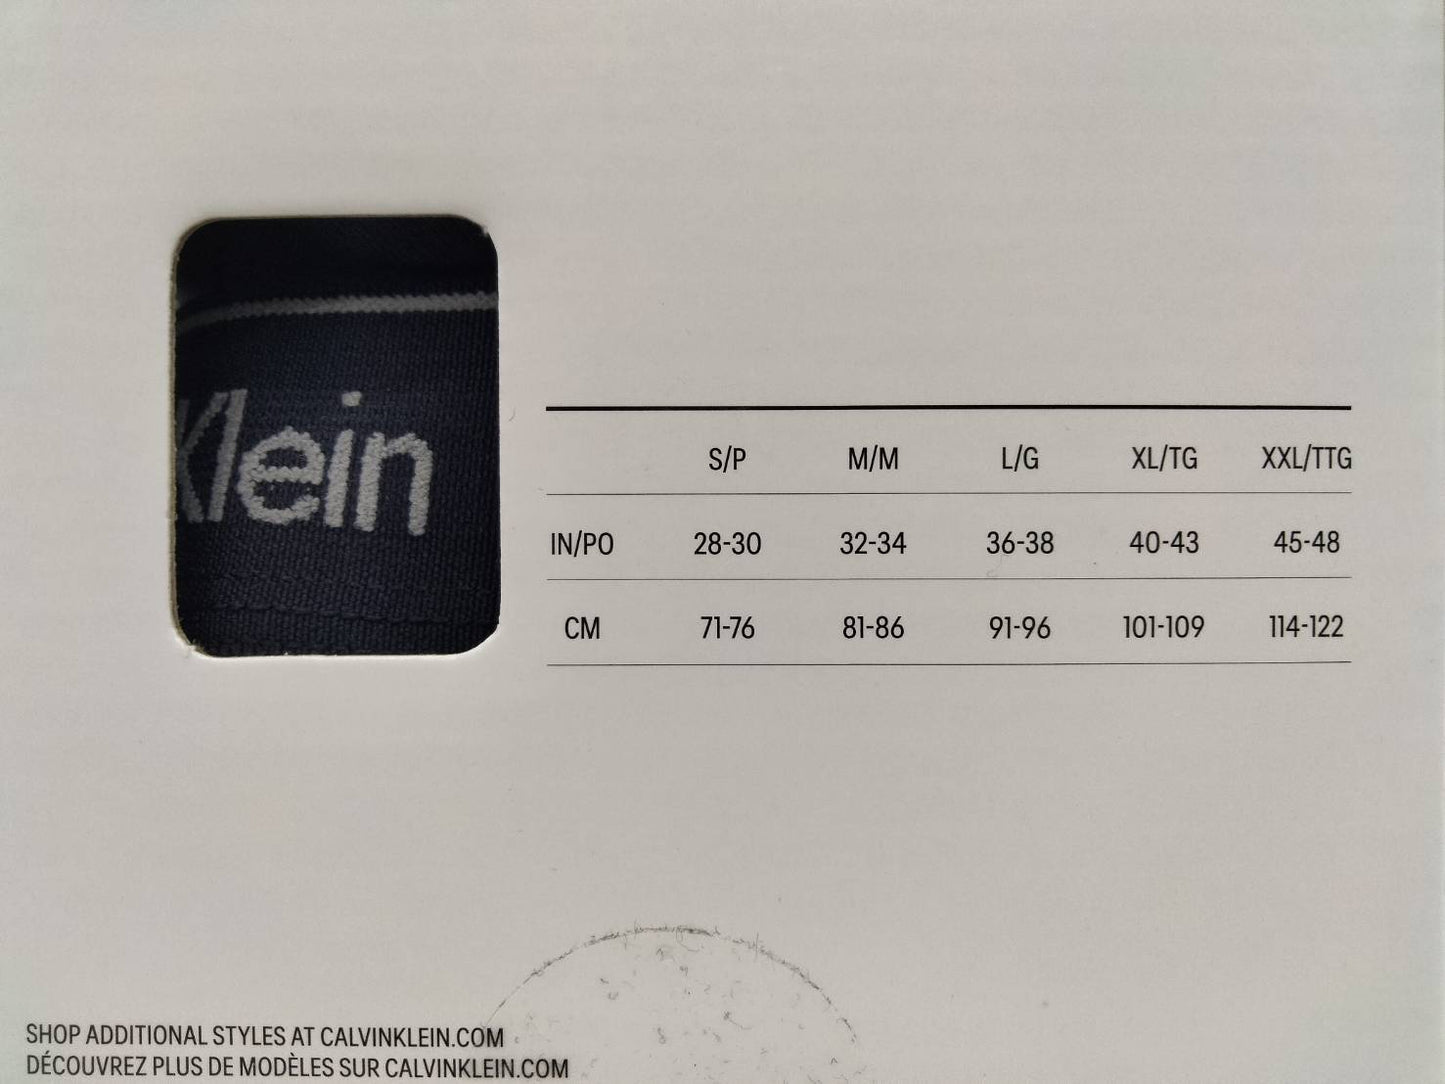 Calvin Klein(カルバンクライン)ボクサーパンツ Black 2枚セット メンズ下着 NB4003